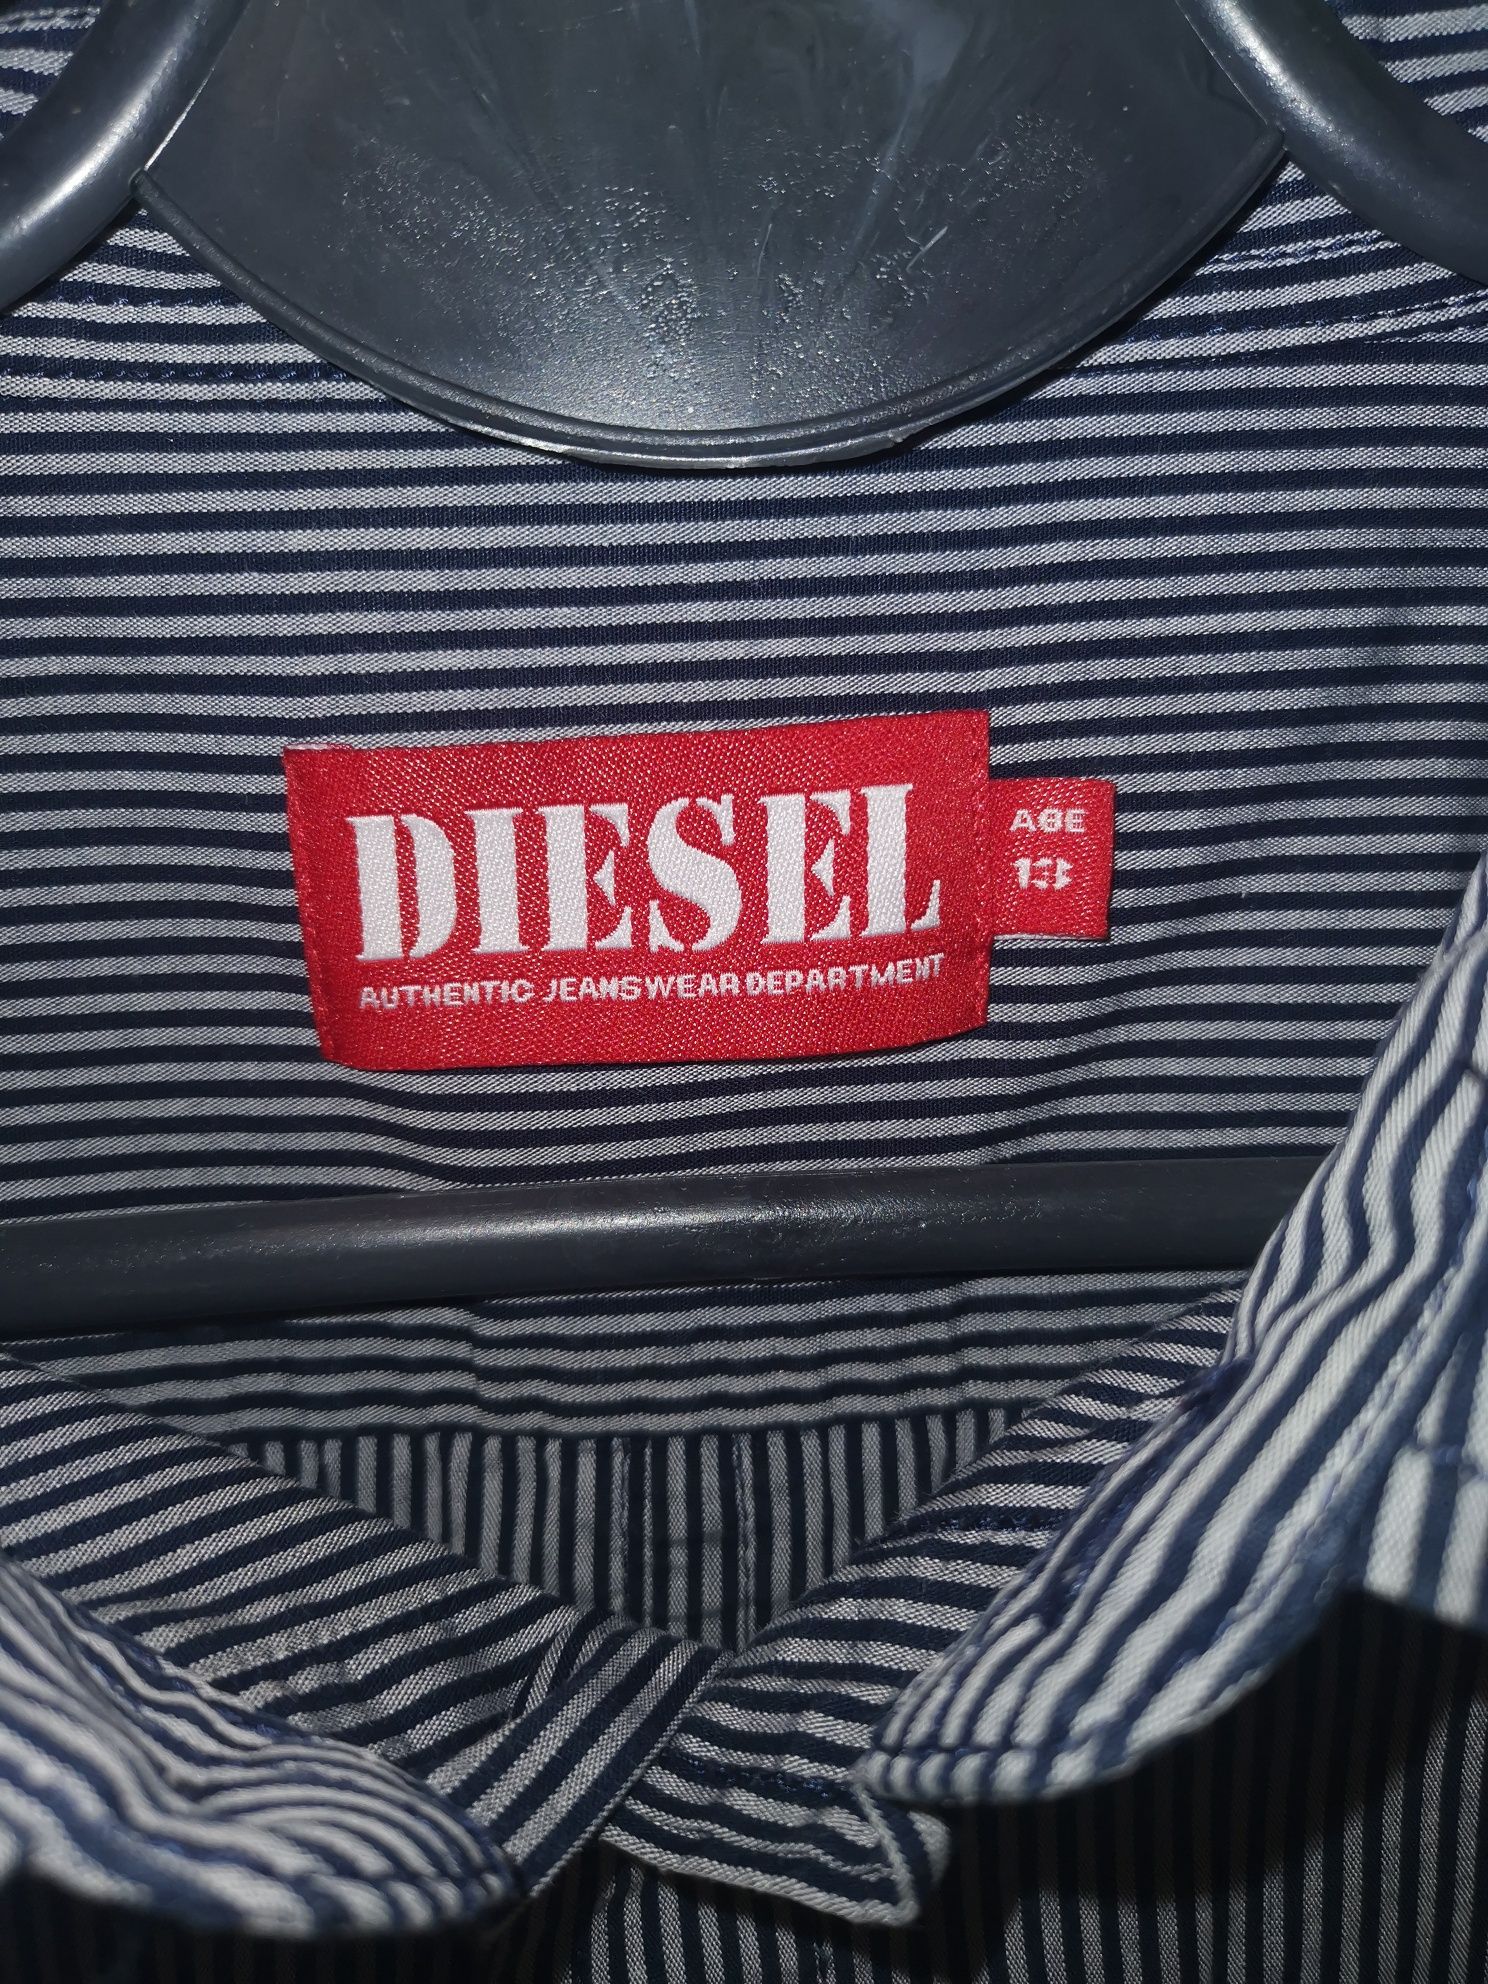 Diesel koszula chłopięca rozm. 158 cm, 13 lat